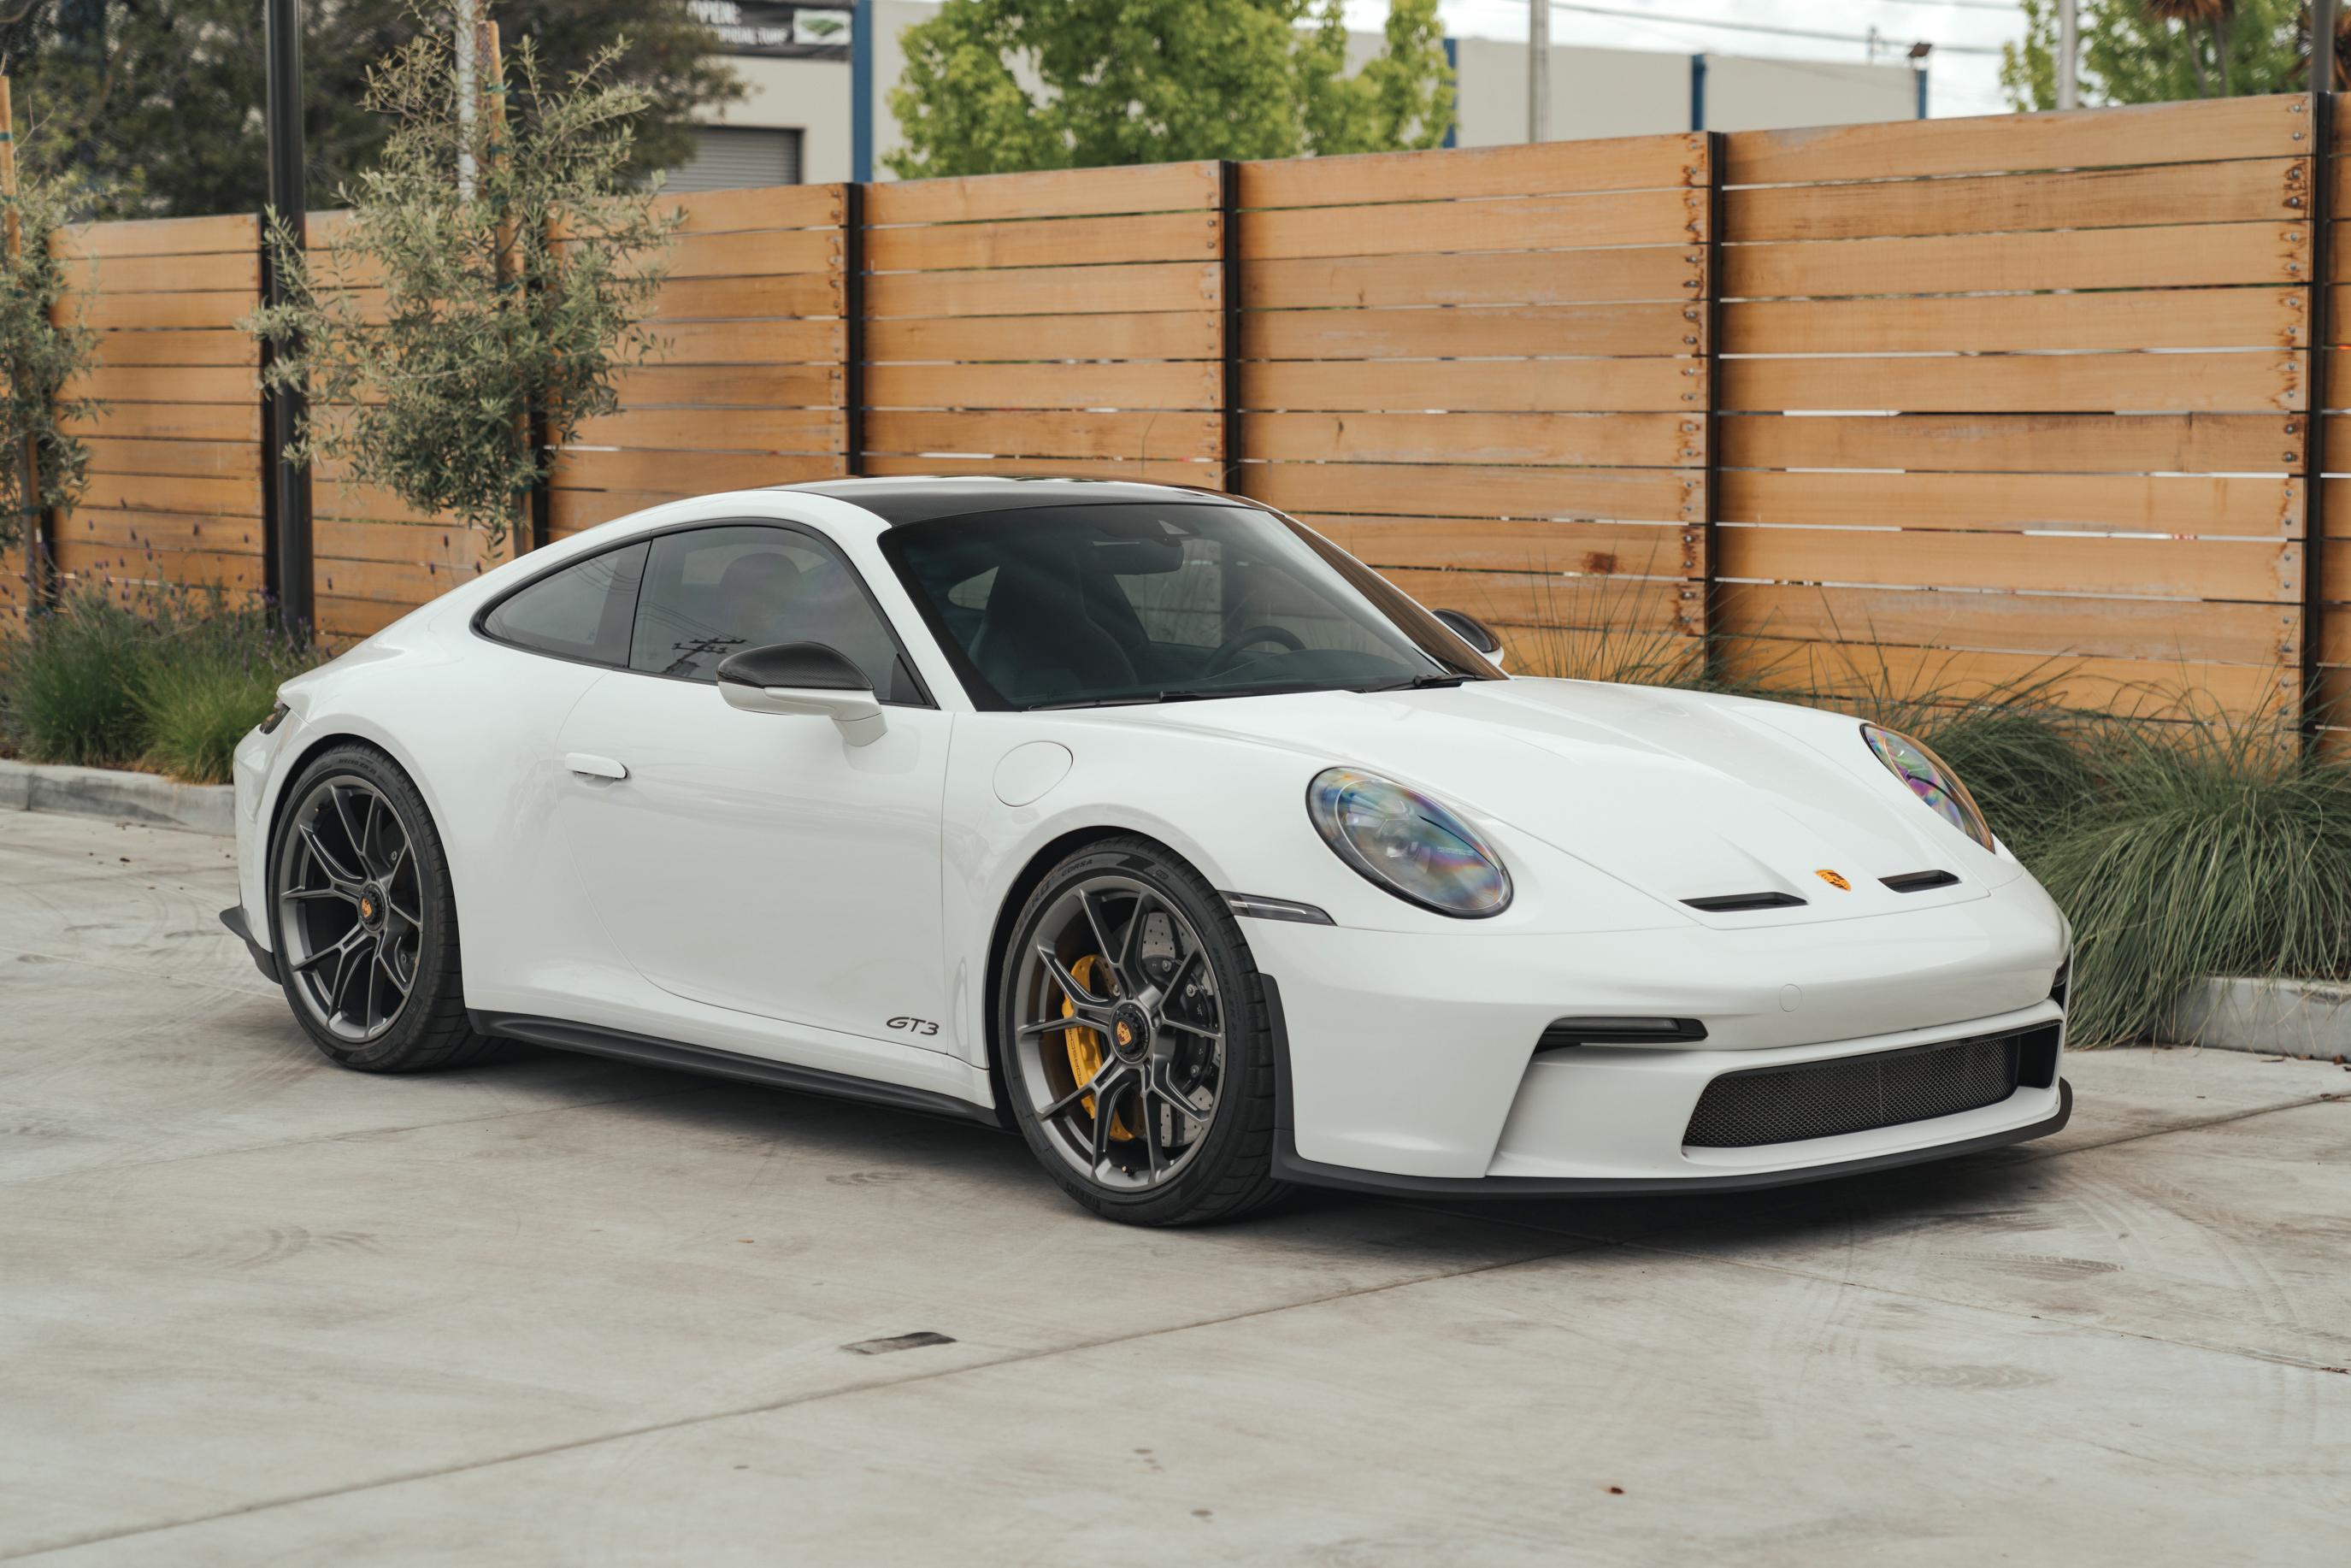 https://issimi-vehicles-cdn.b-cdn.net/publicamlvehiclemanagement/VehicleDetails/451/2022 Porsche 911 GT3 Touring White -  270755_9034.jpg